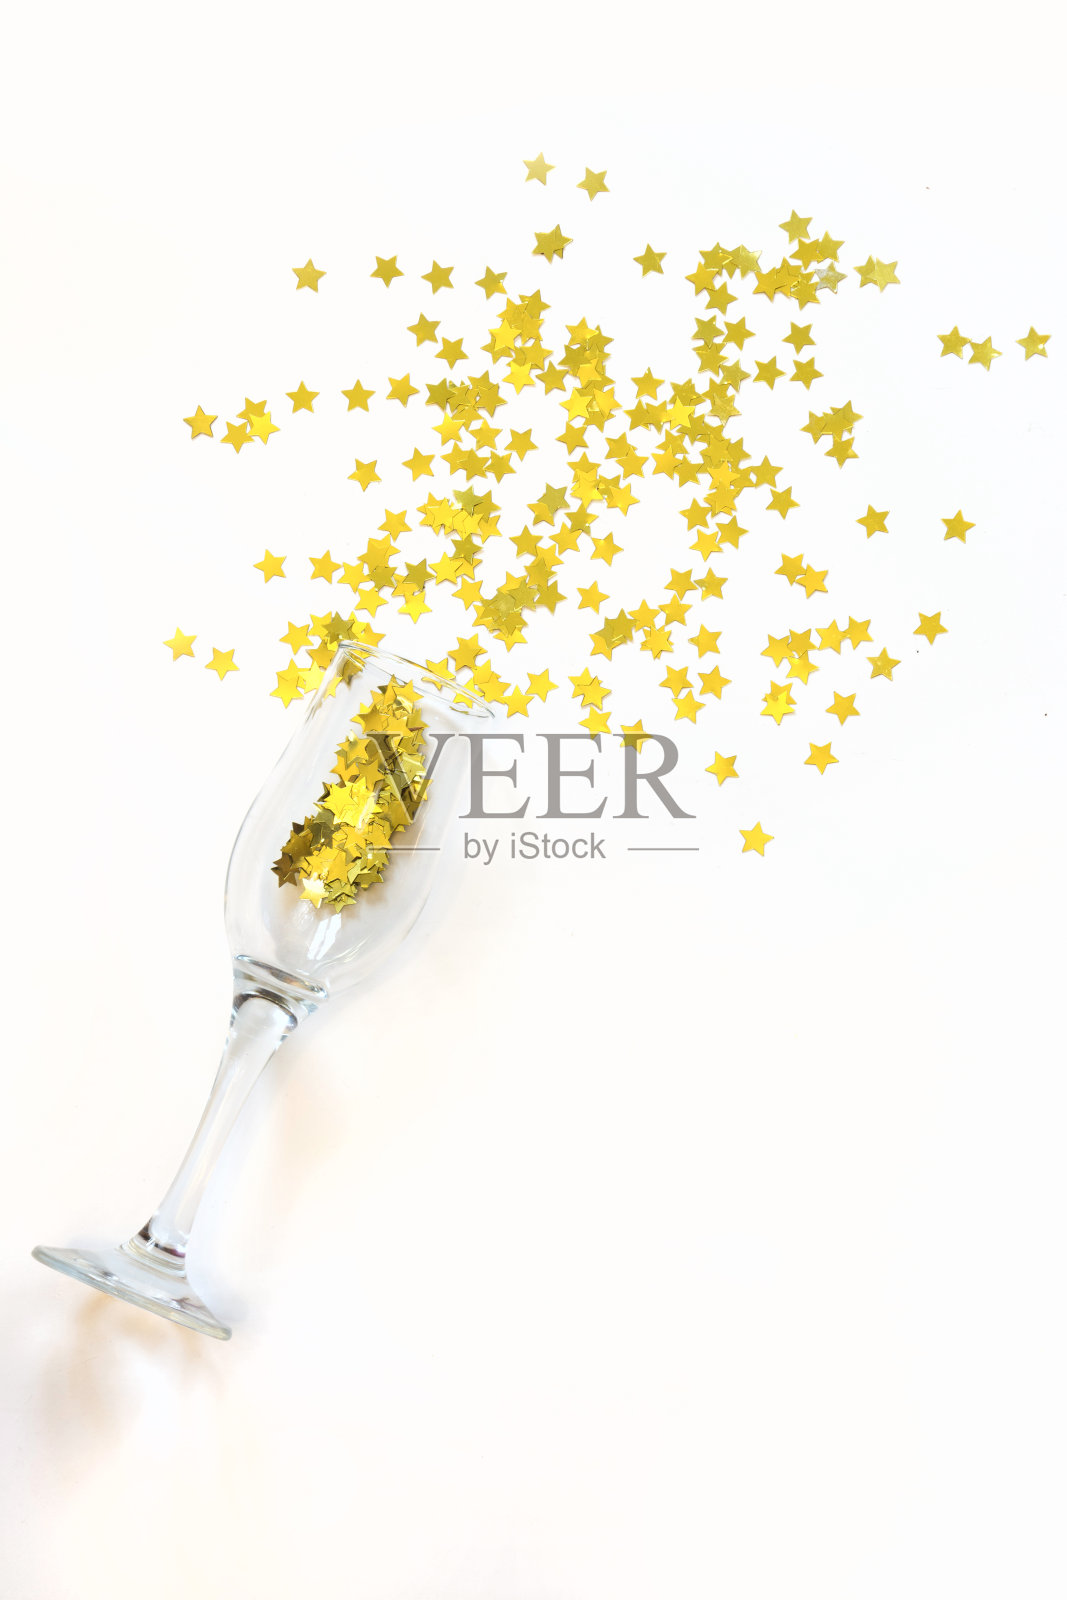 星星形状的五彩纸屑将香槟倒在白色的背景上。照片摄影图片